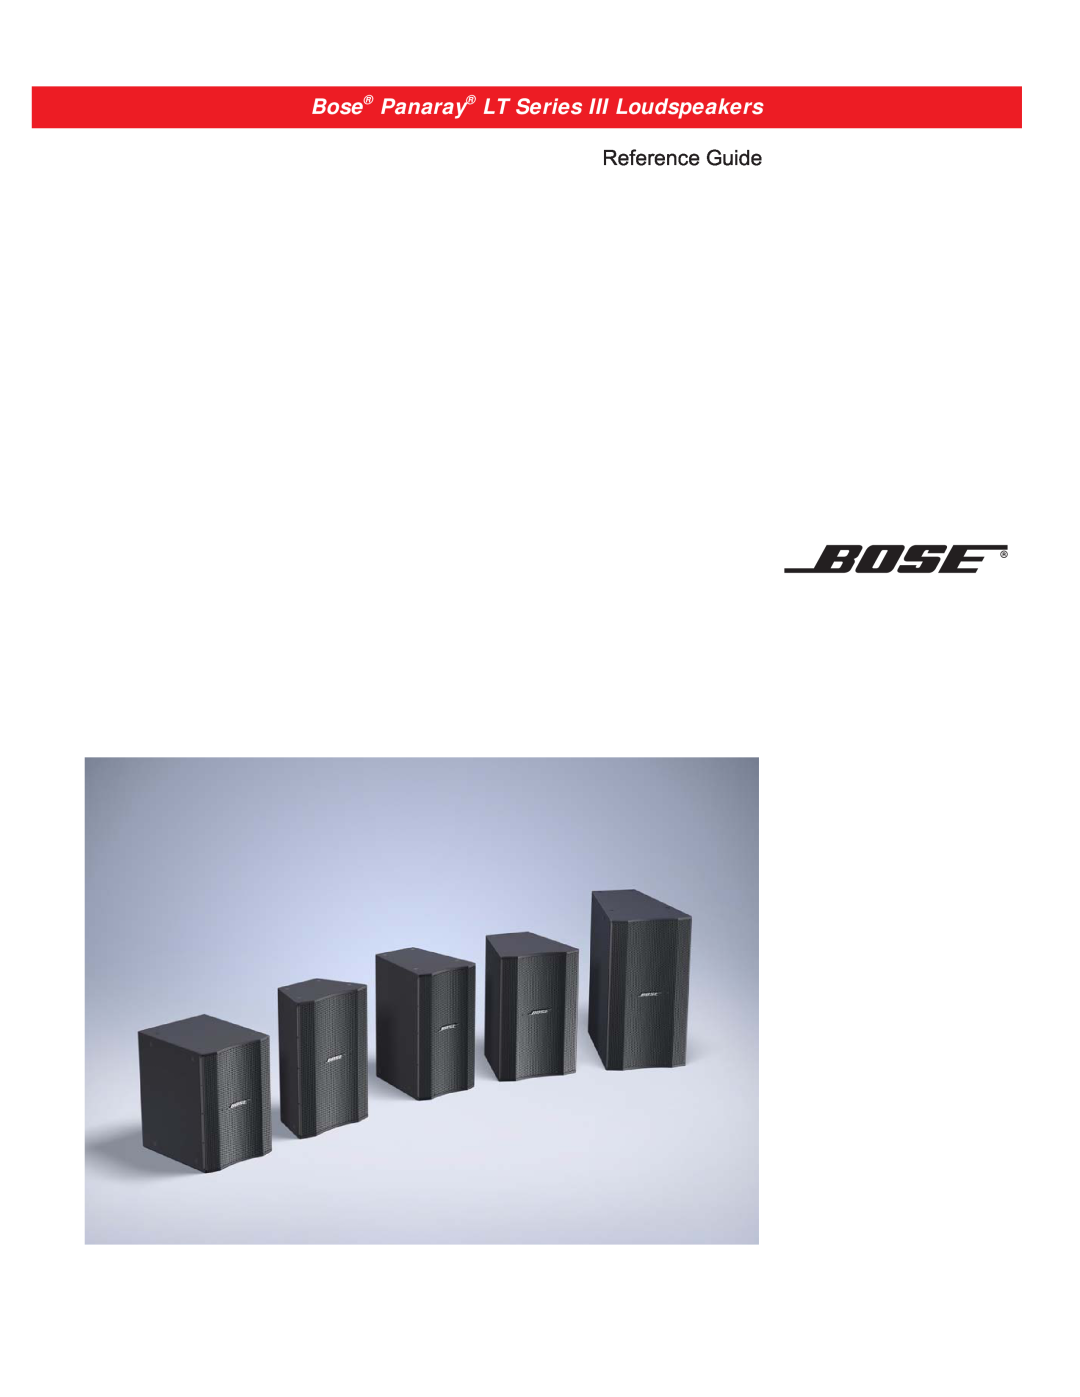 Bose Bose Panaray Loudspeakers manual Bose Panaray LT Series III Loudspeakers, Reference Guide 